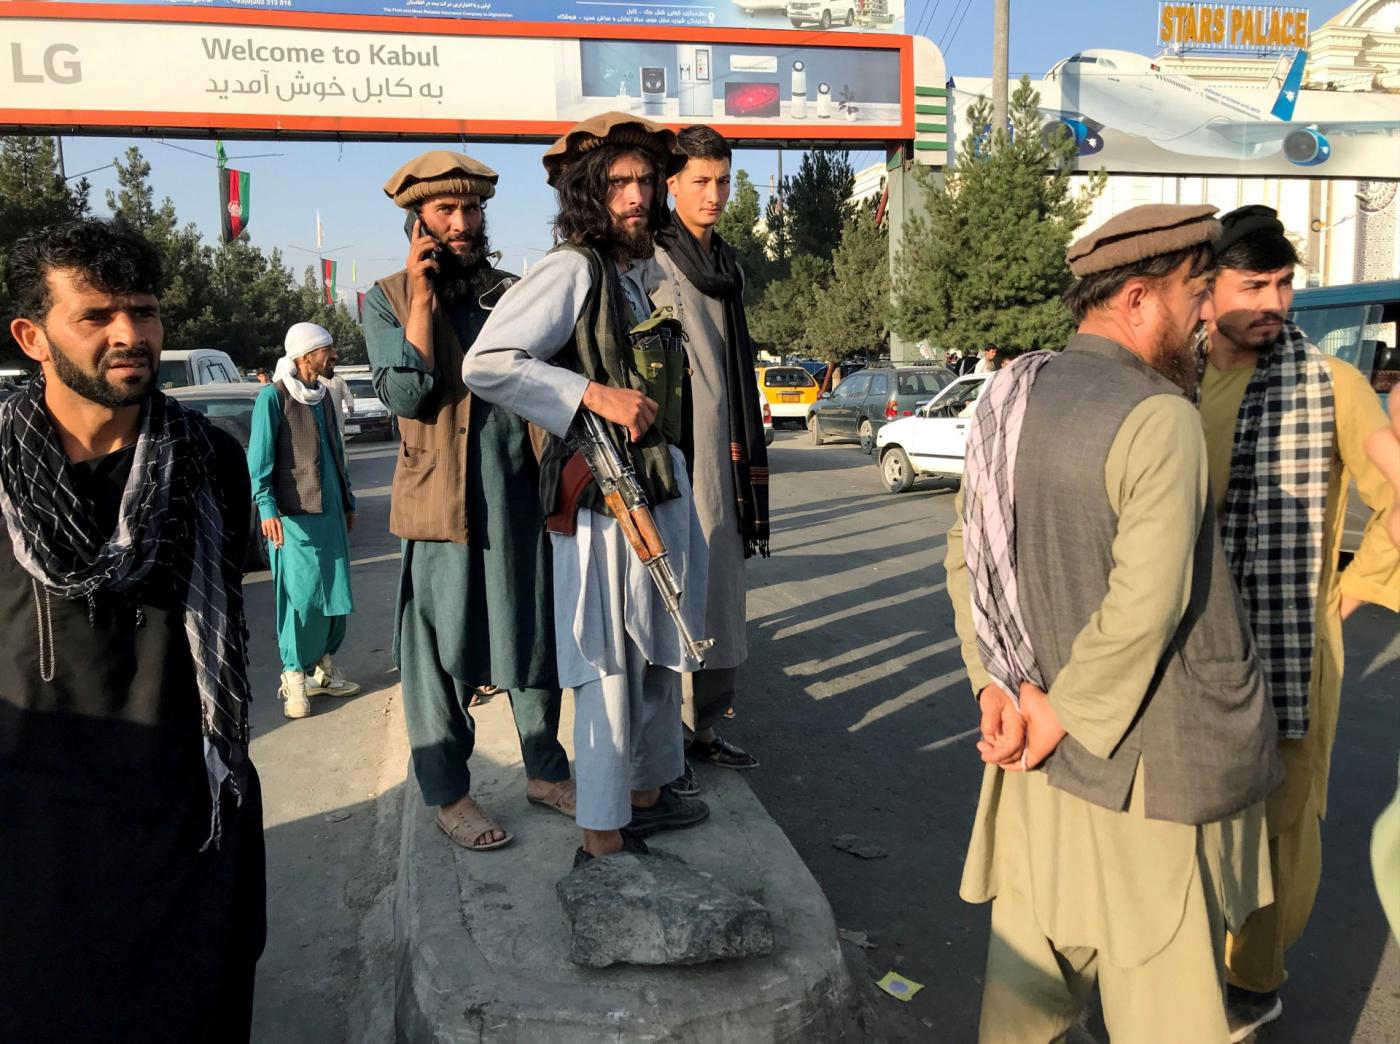 Γαλλοβρετανική πρωτοβουλία για ζώνη ασφαλείας στην Καμπούλ